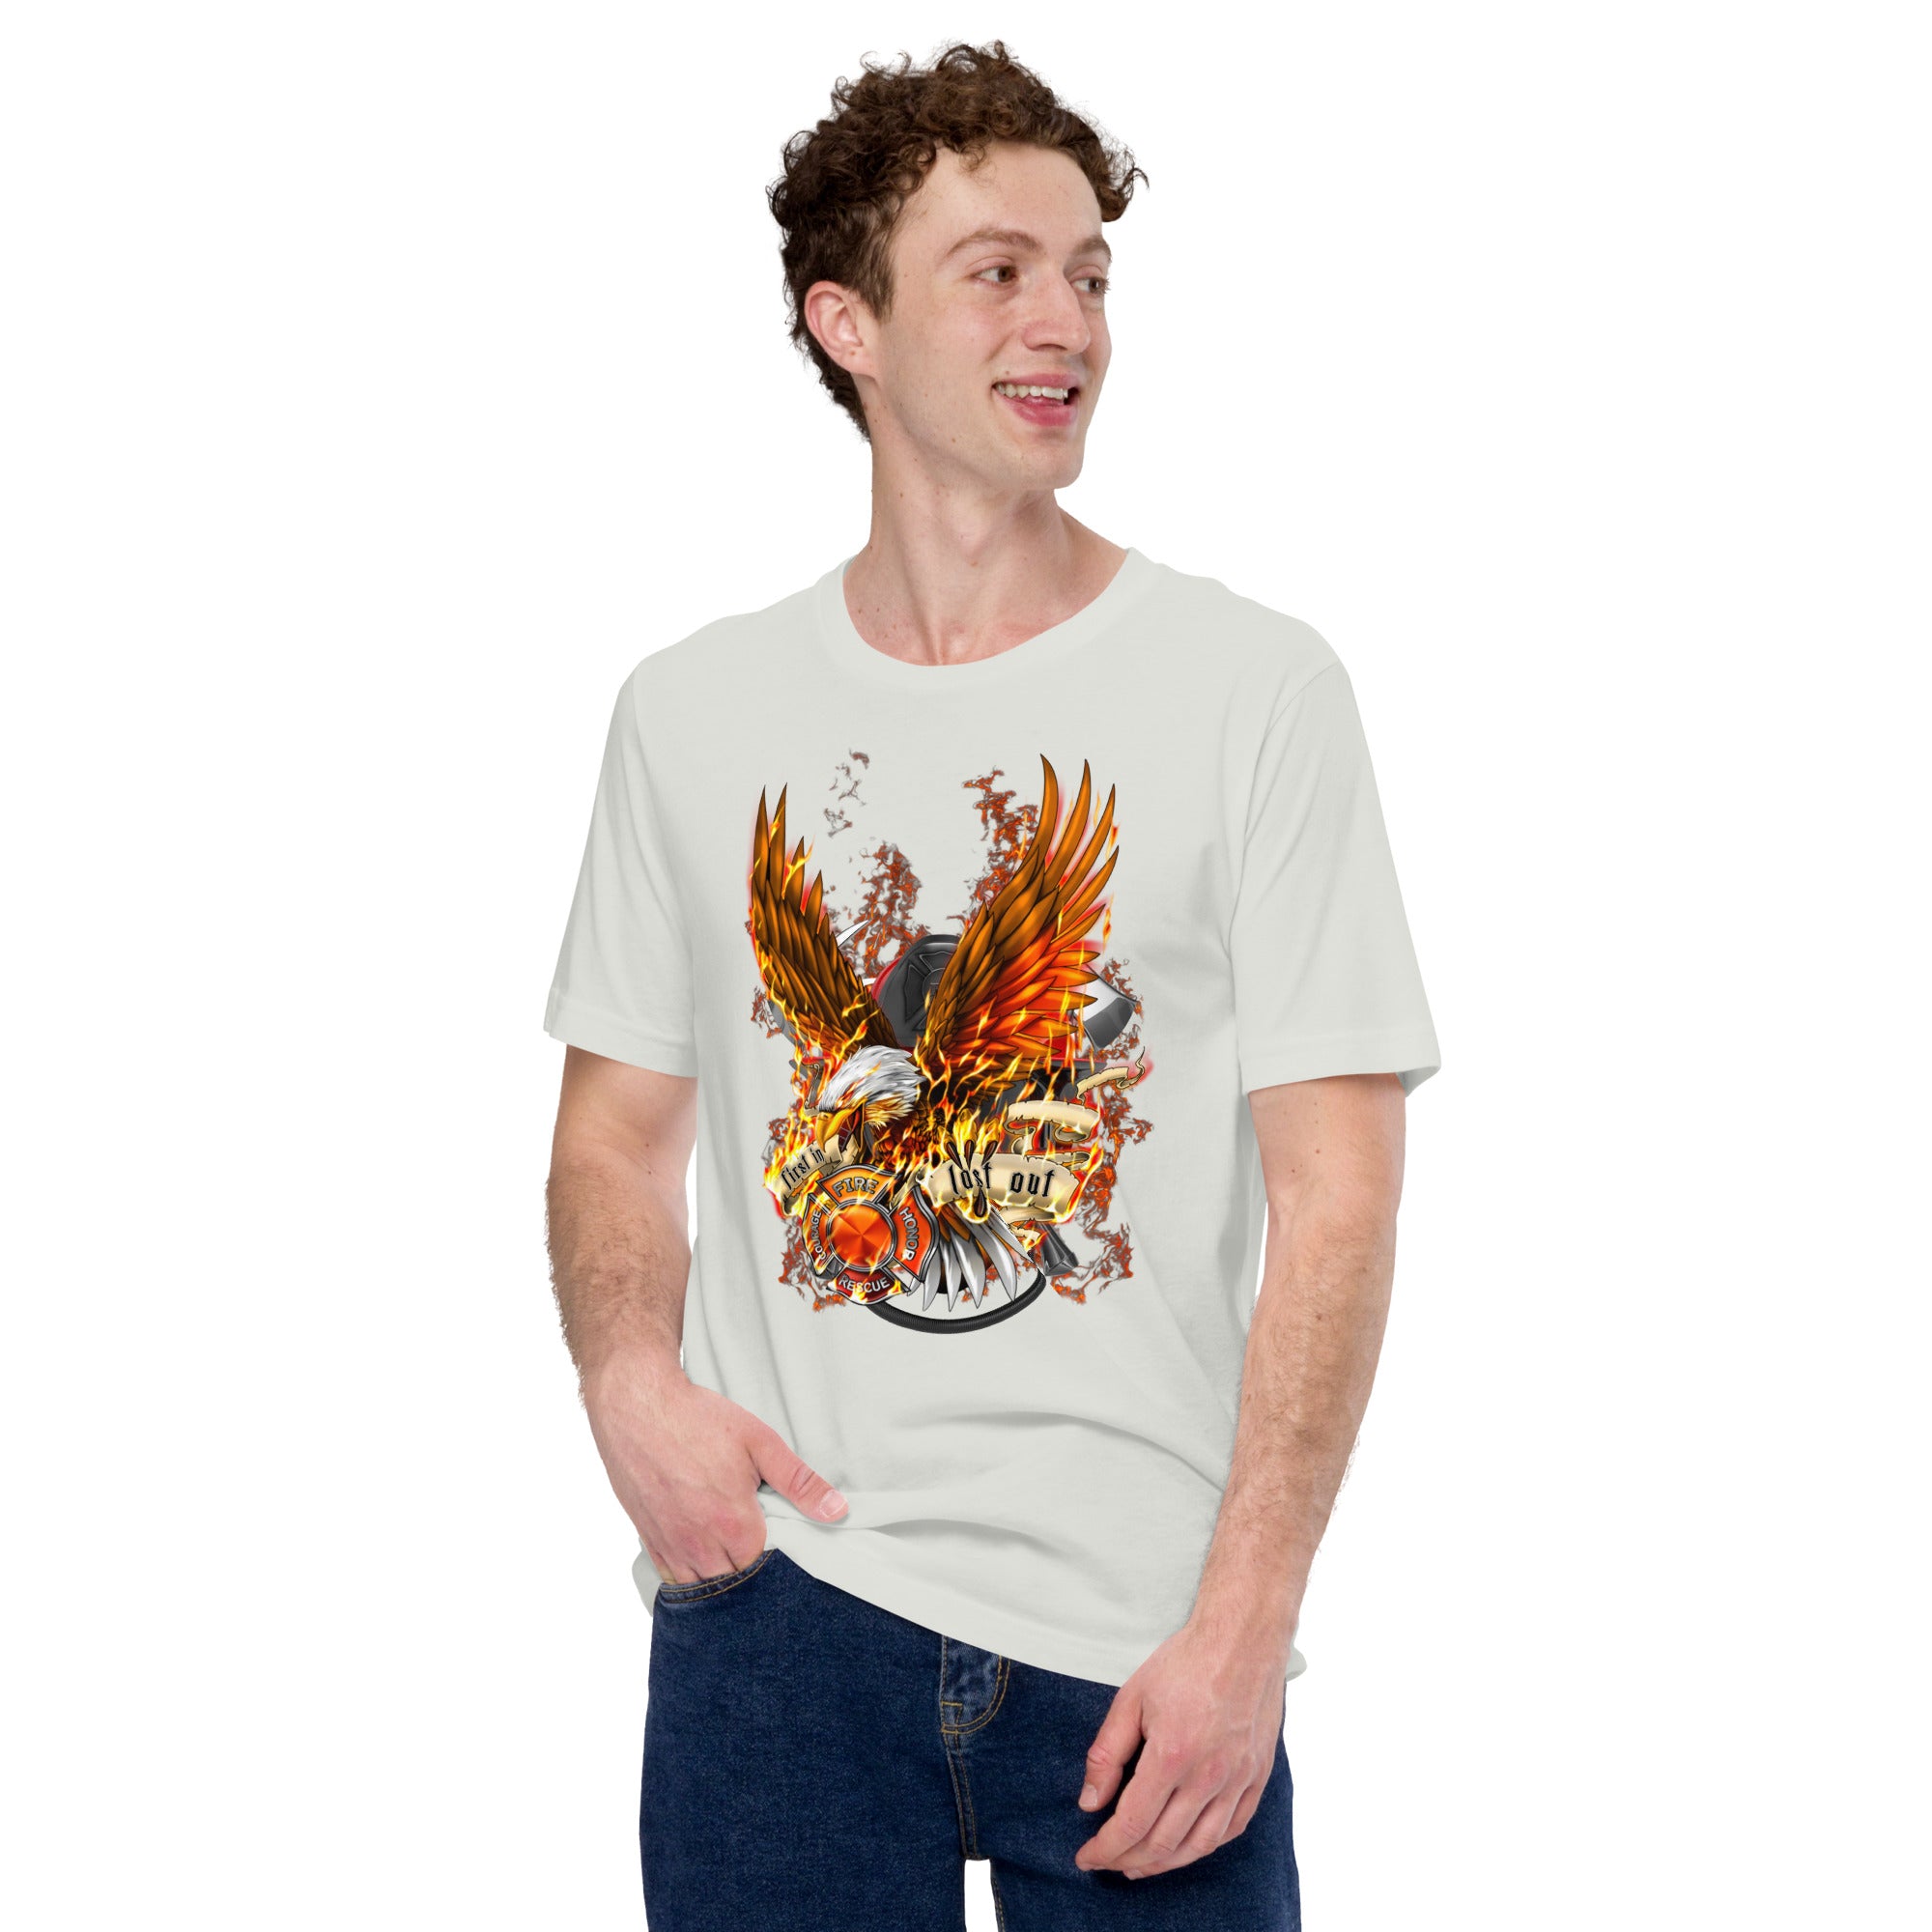 Feuerwehrmann mit brennendem Adler Klassisches Herren-T-Shirt